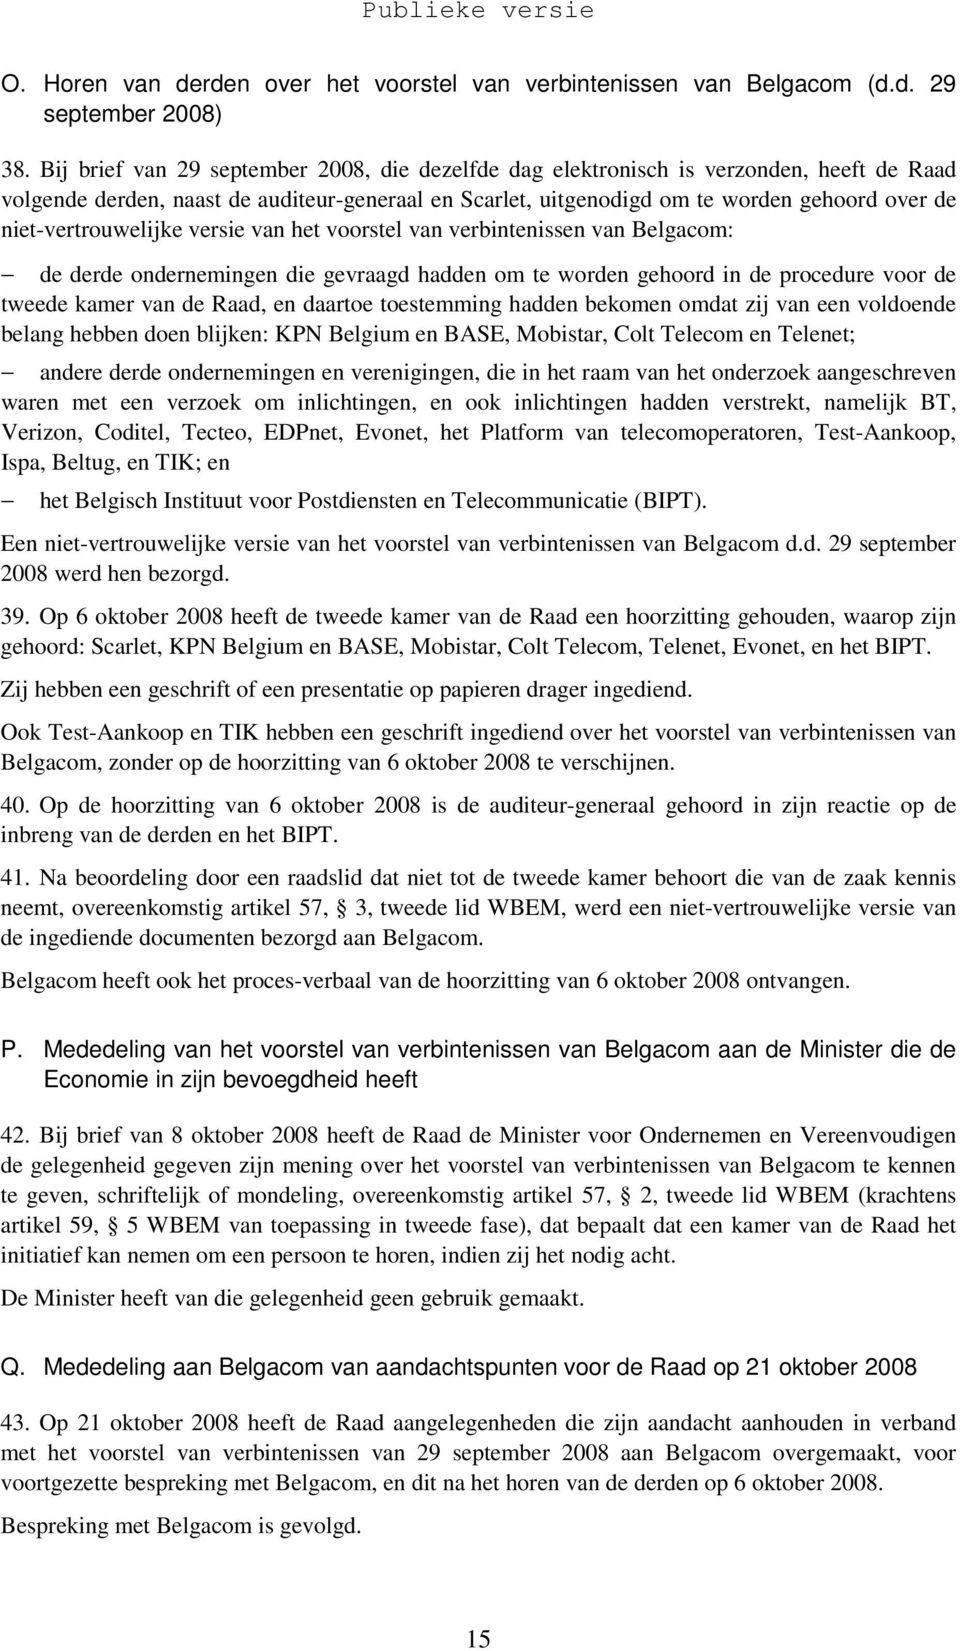 niet-vertrouwelijke versie van het voorstel van verbintenissen van Belgacom: de derde ondernemingen die gevraagd hadden om te worden gehoord in de procedure voor de tweede kamer van de Raad, en